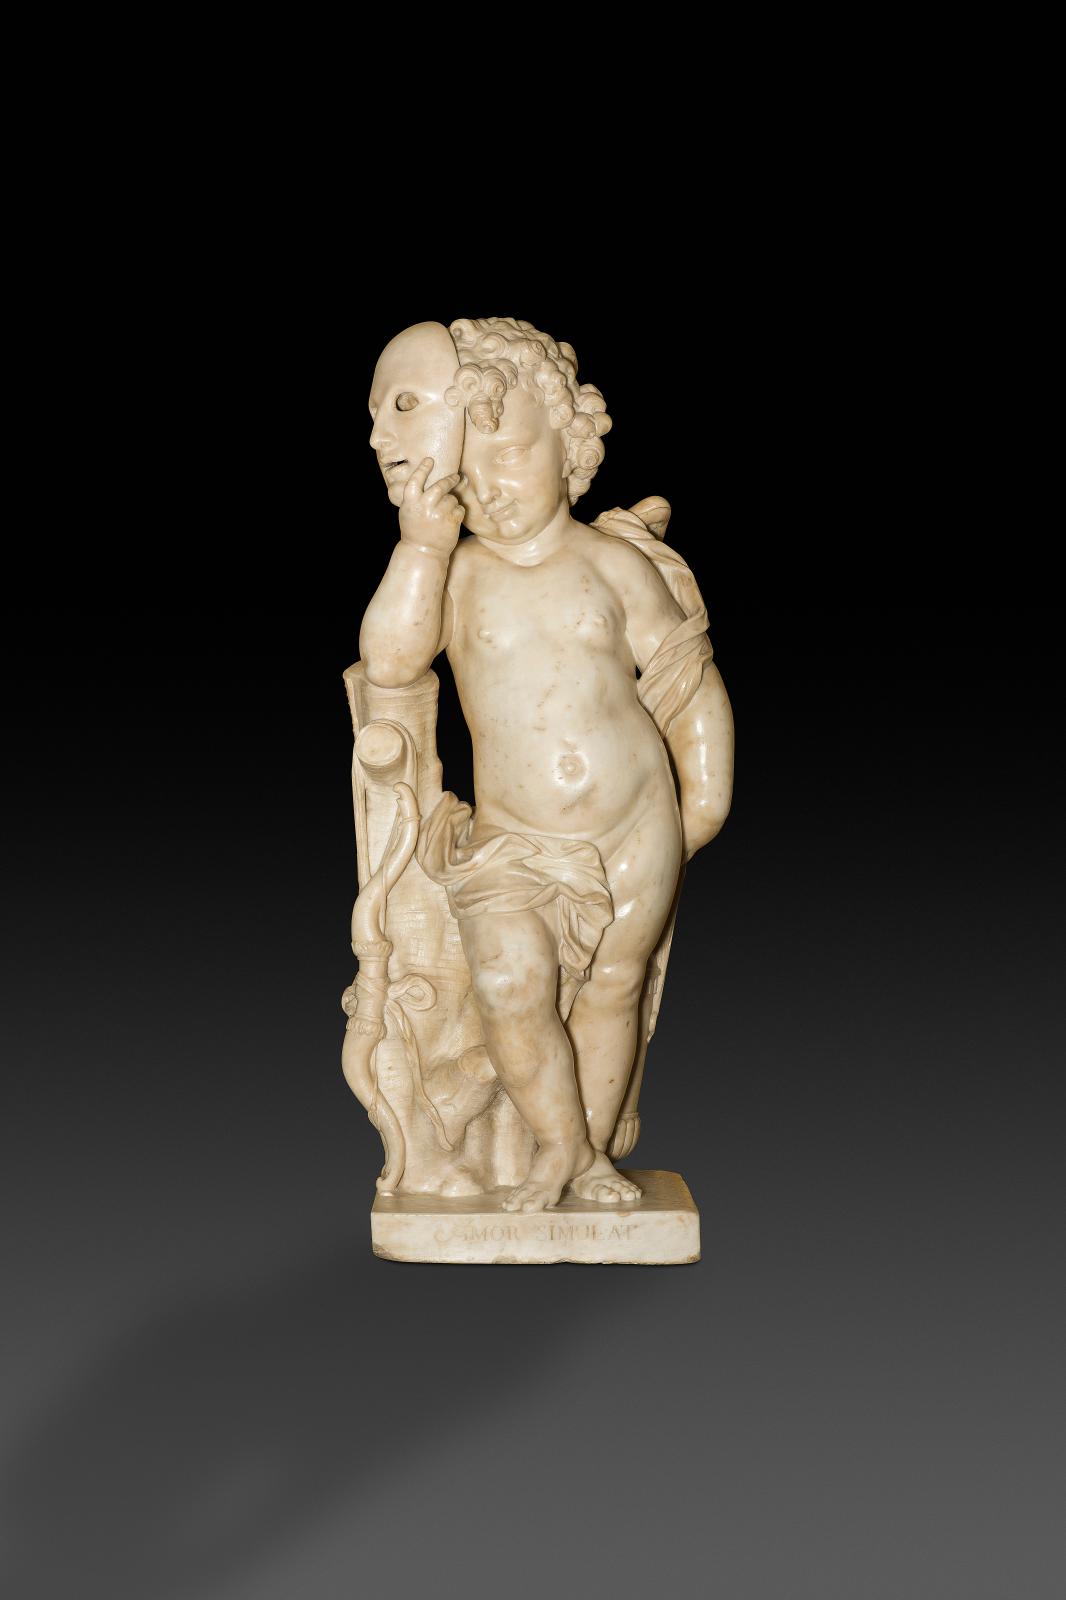 Reconnu comme sculpteur d’ensembles décoratifs comprenant notamment des figures d’enfants, Jan Claudius de Cock (1668-1735) fut également peintre, gra